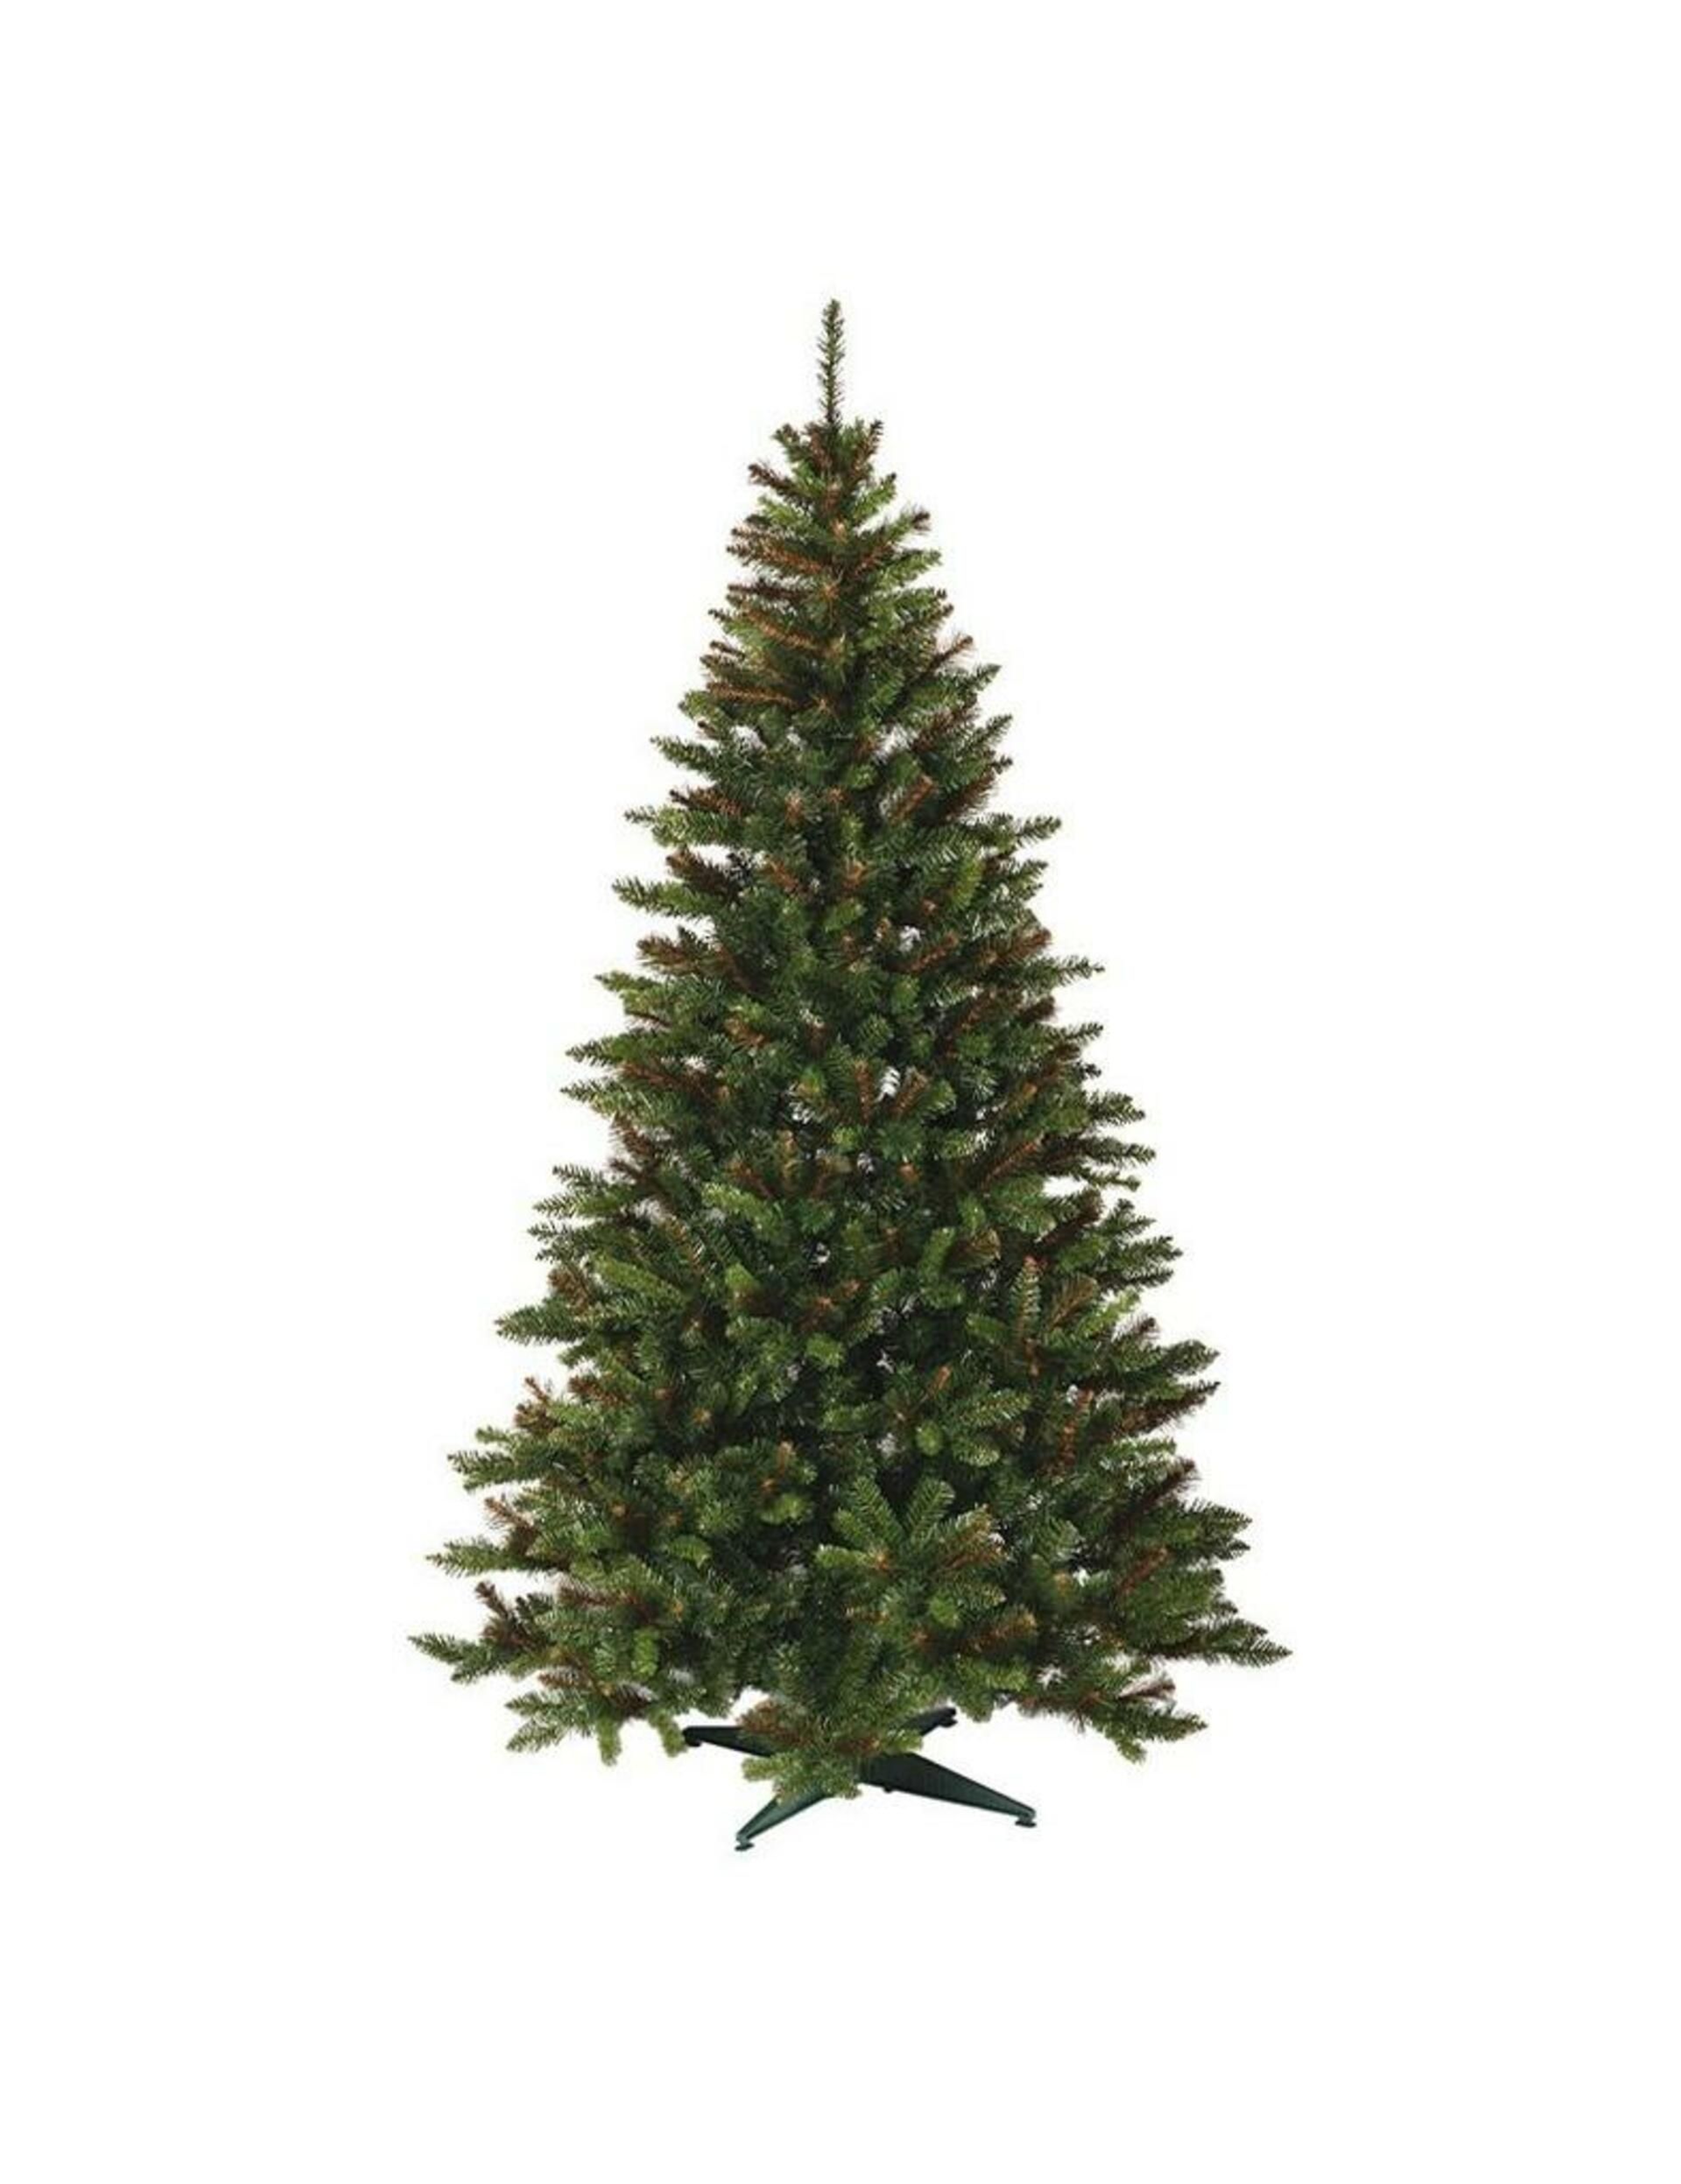 DecoLED Umělý vánoční stromek 180 cm, smrk Carmen s 2D jehličím